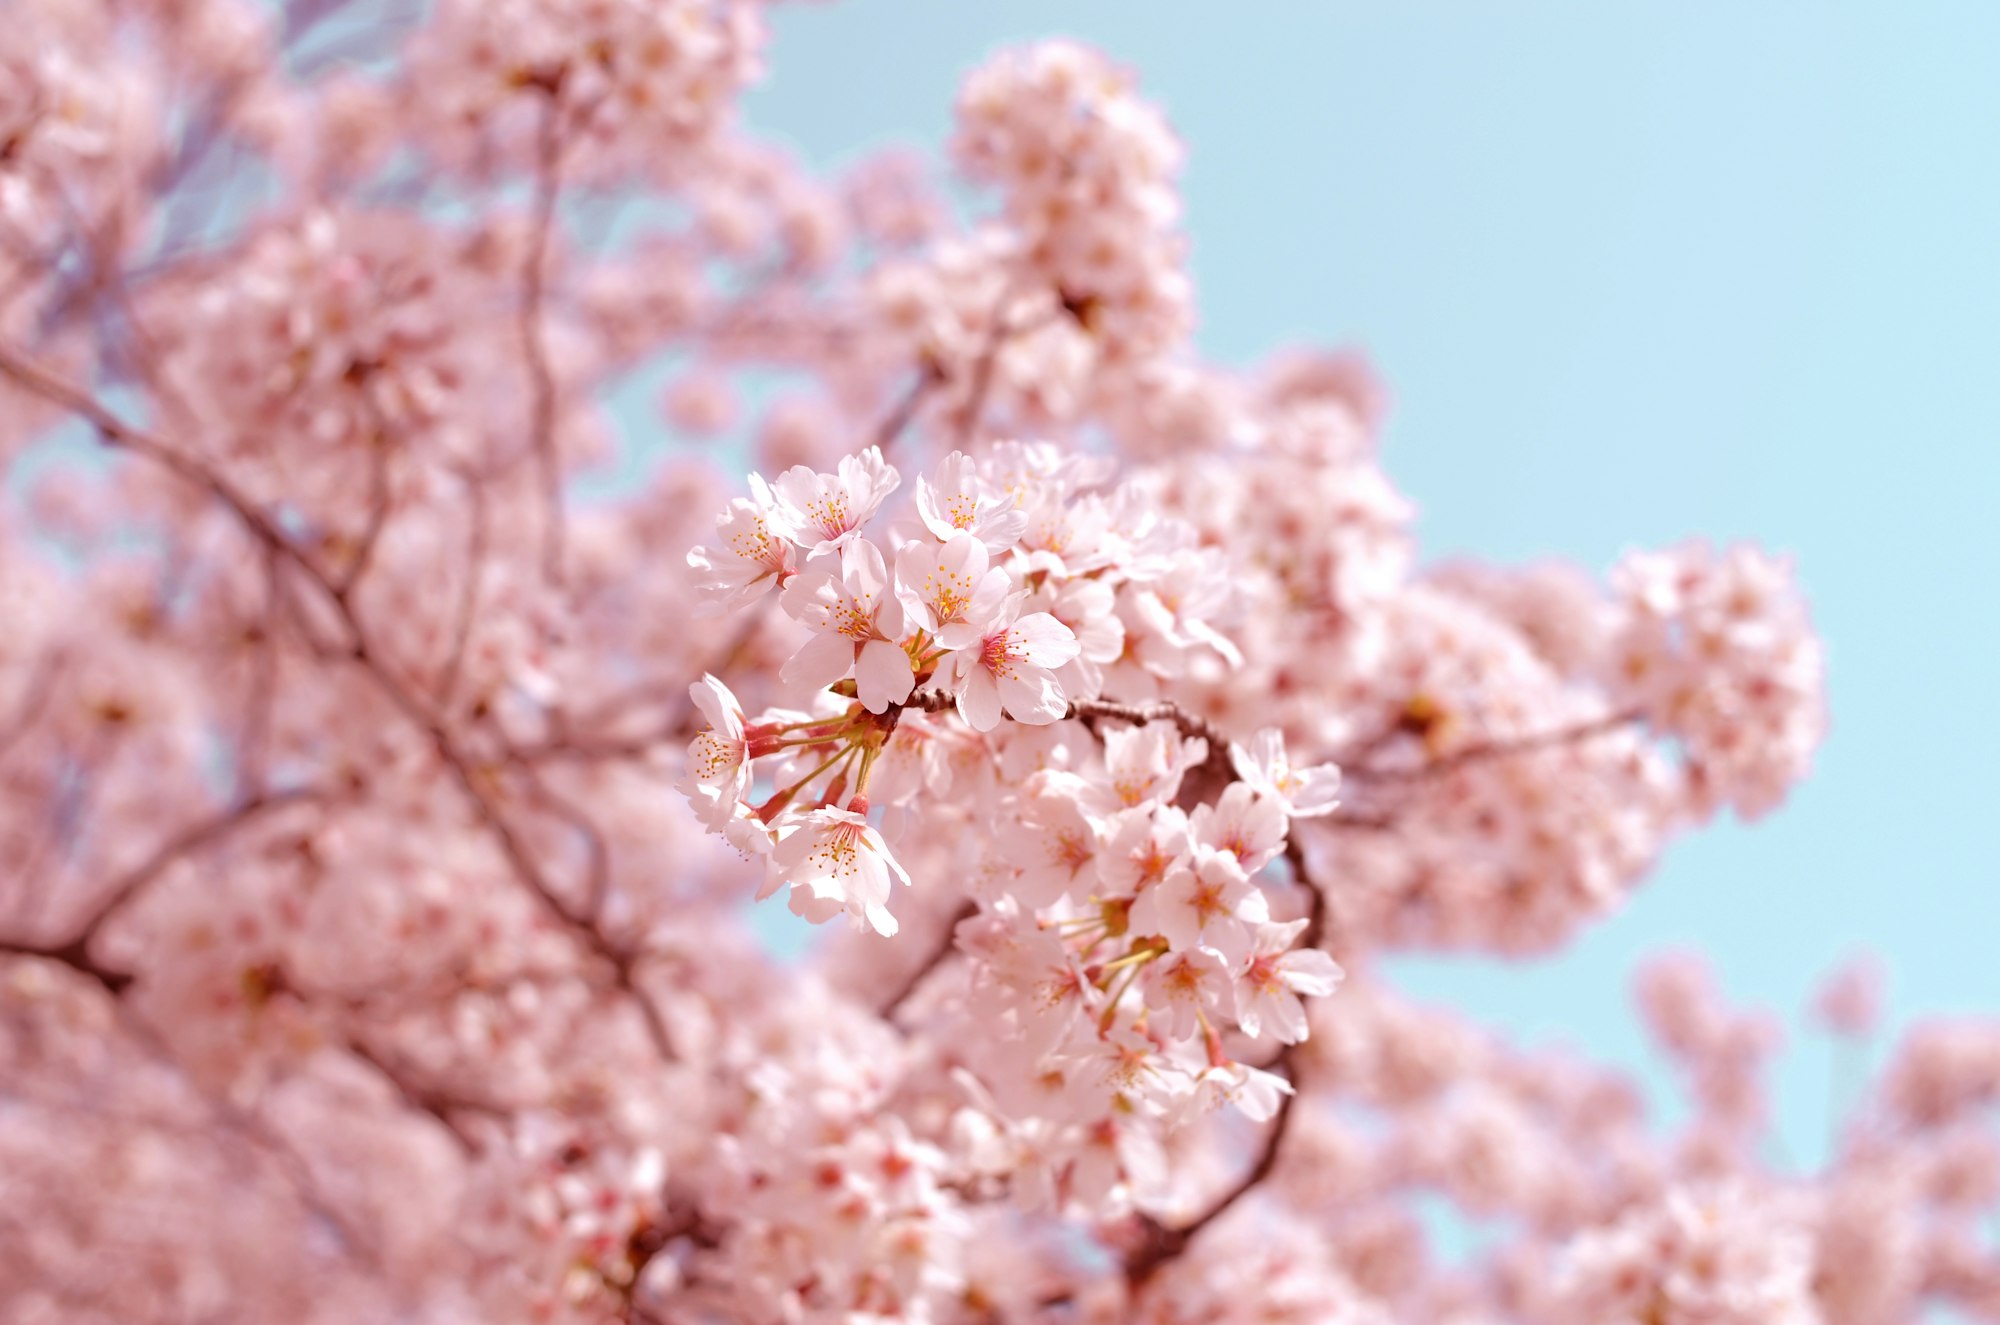 维多利亚首批樱花已开 数花节 3月9日开启